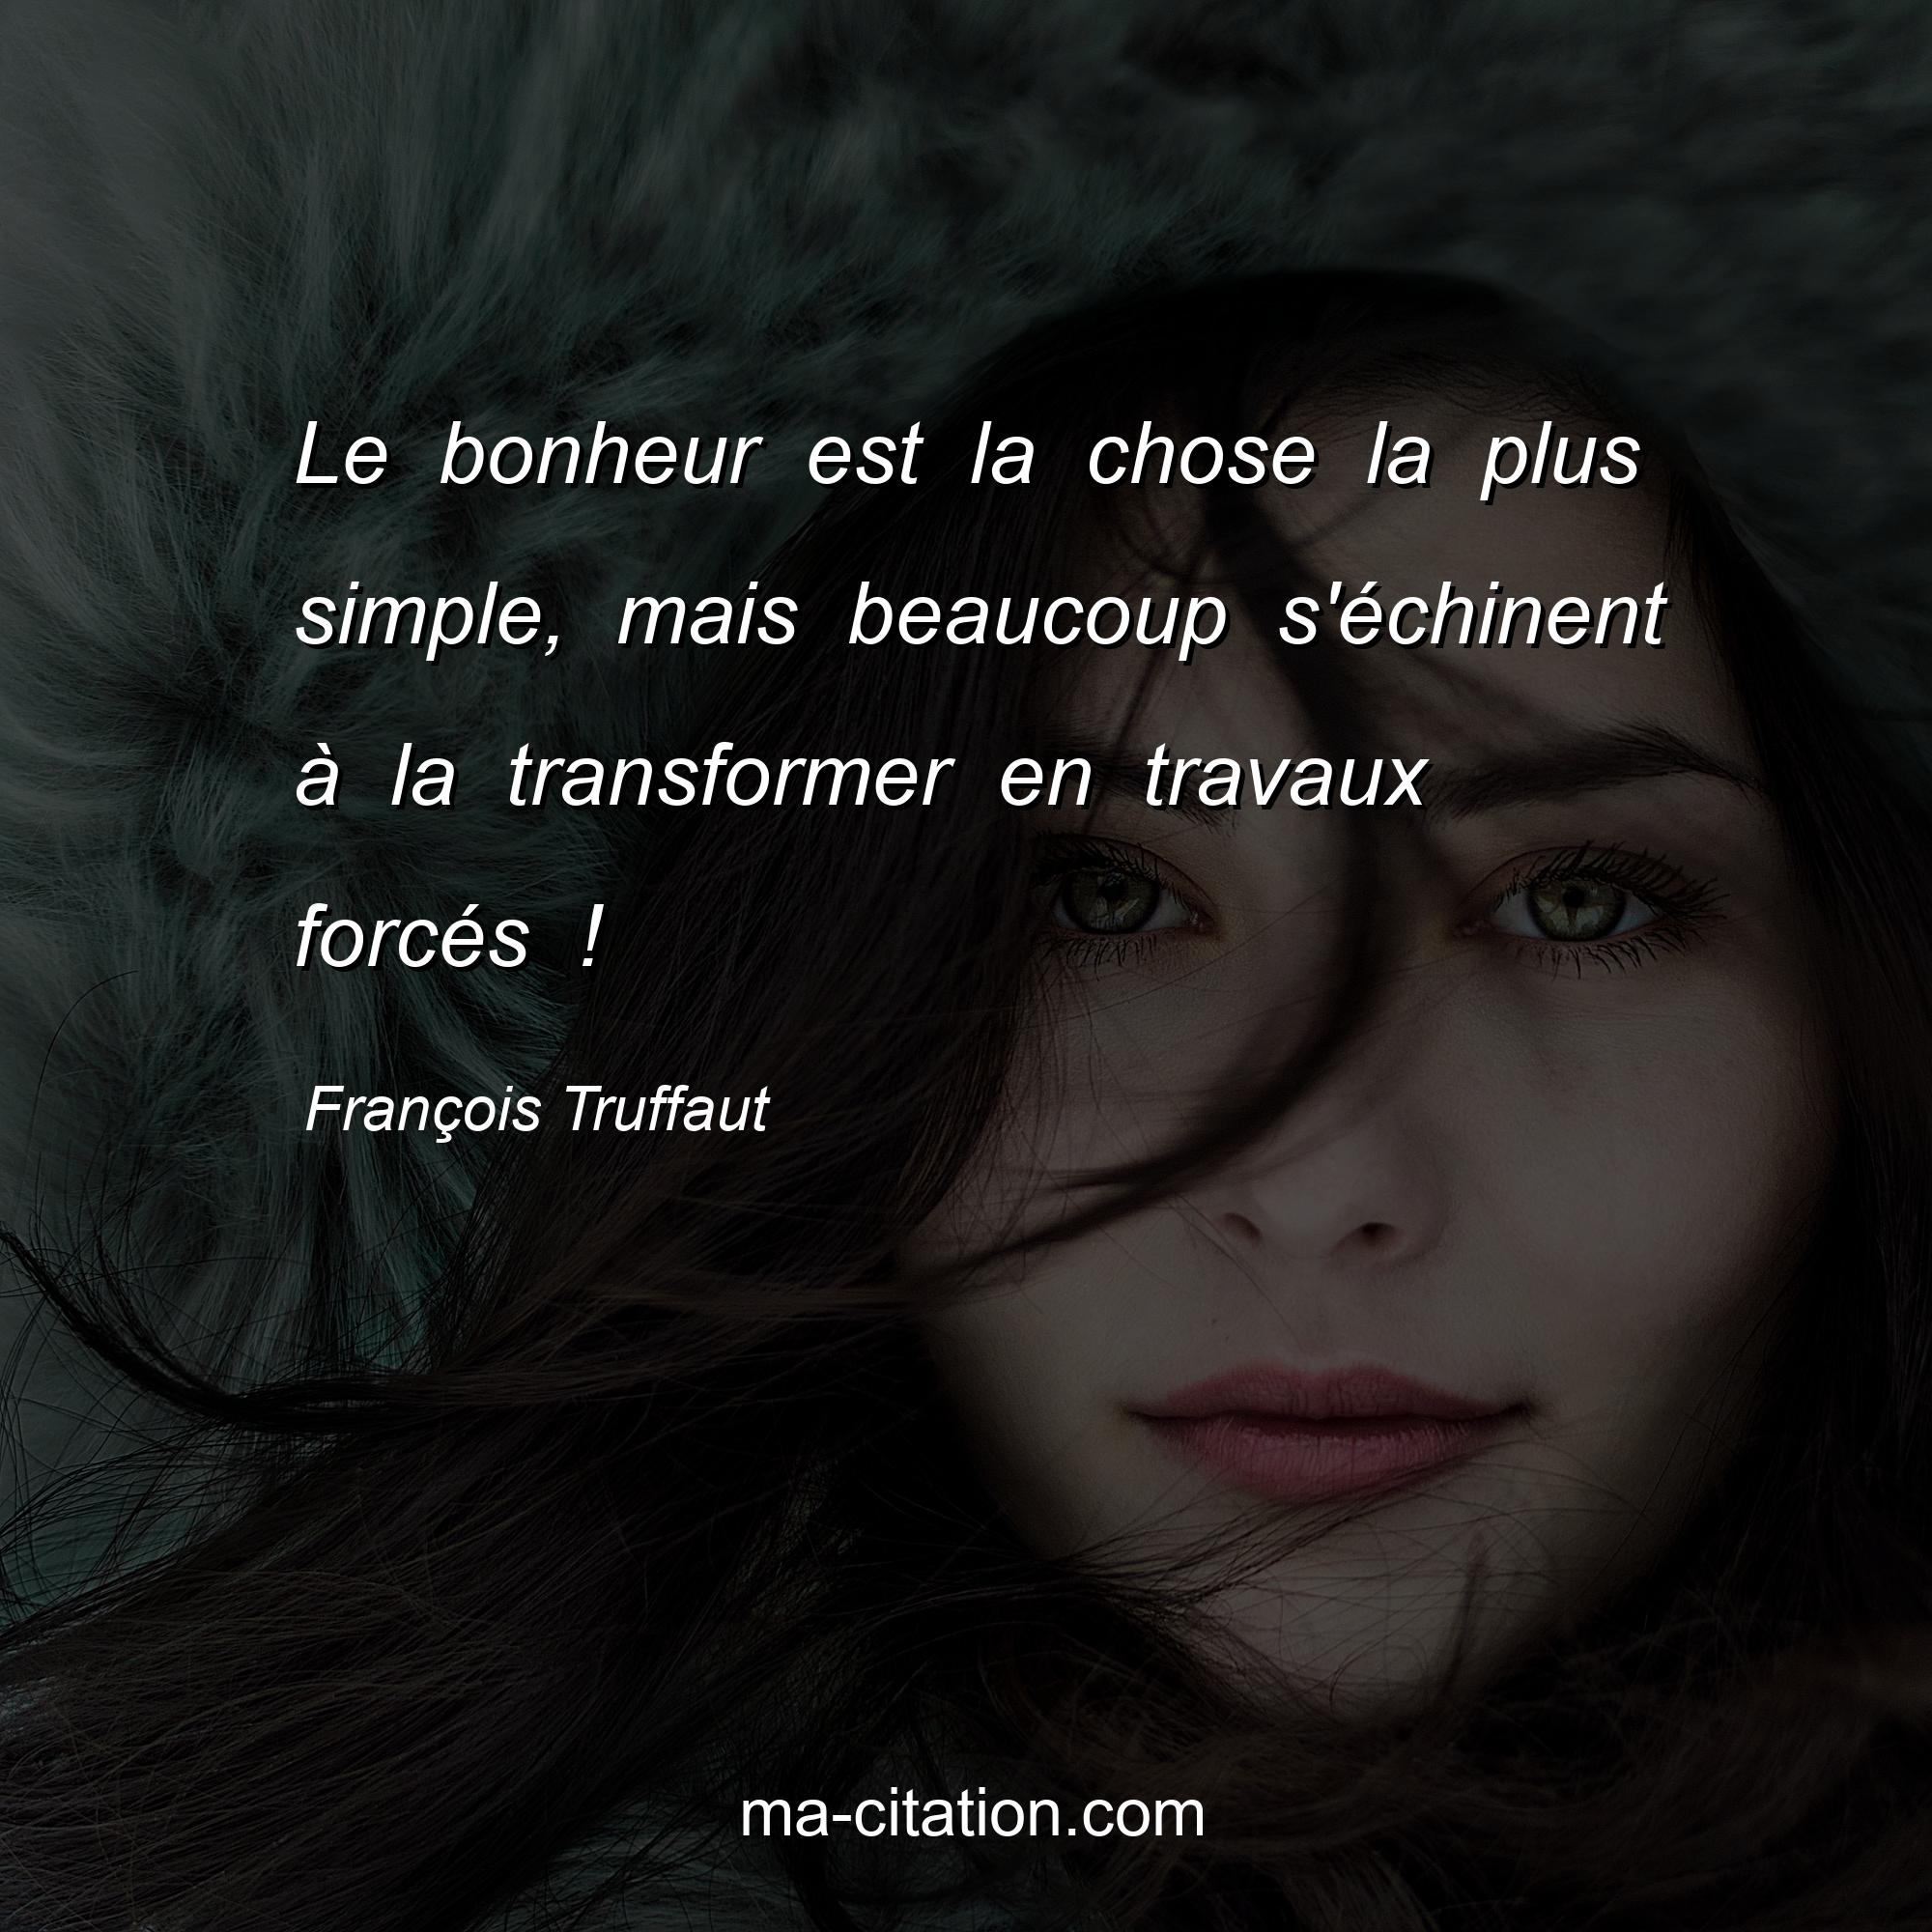 François Truffaut : Le bonheur est la chose la plus simple, mais beaucoup s'échinent à la transformer en travaux forcés !